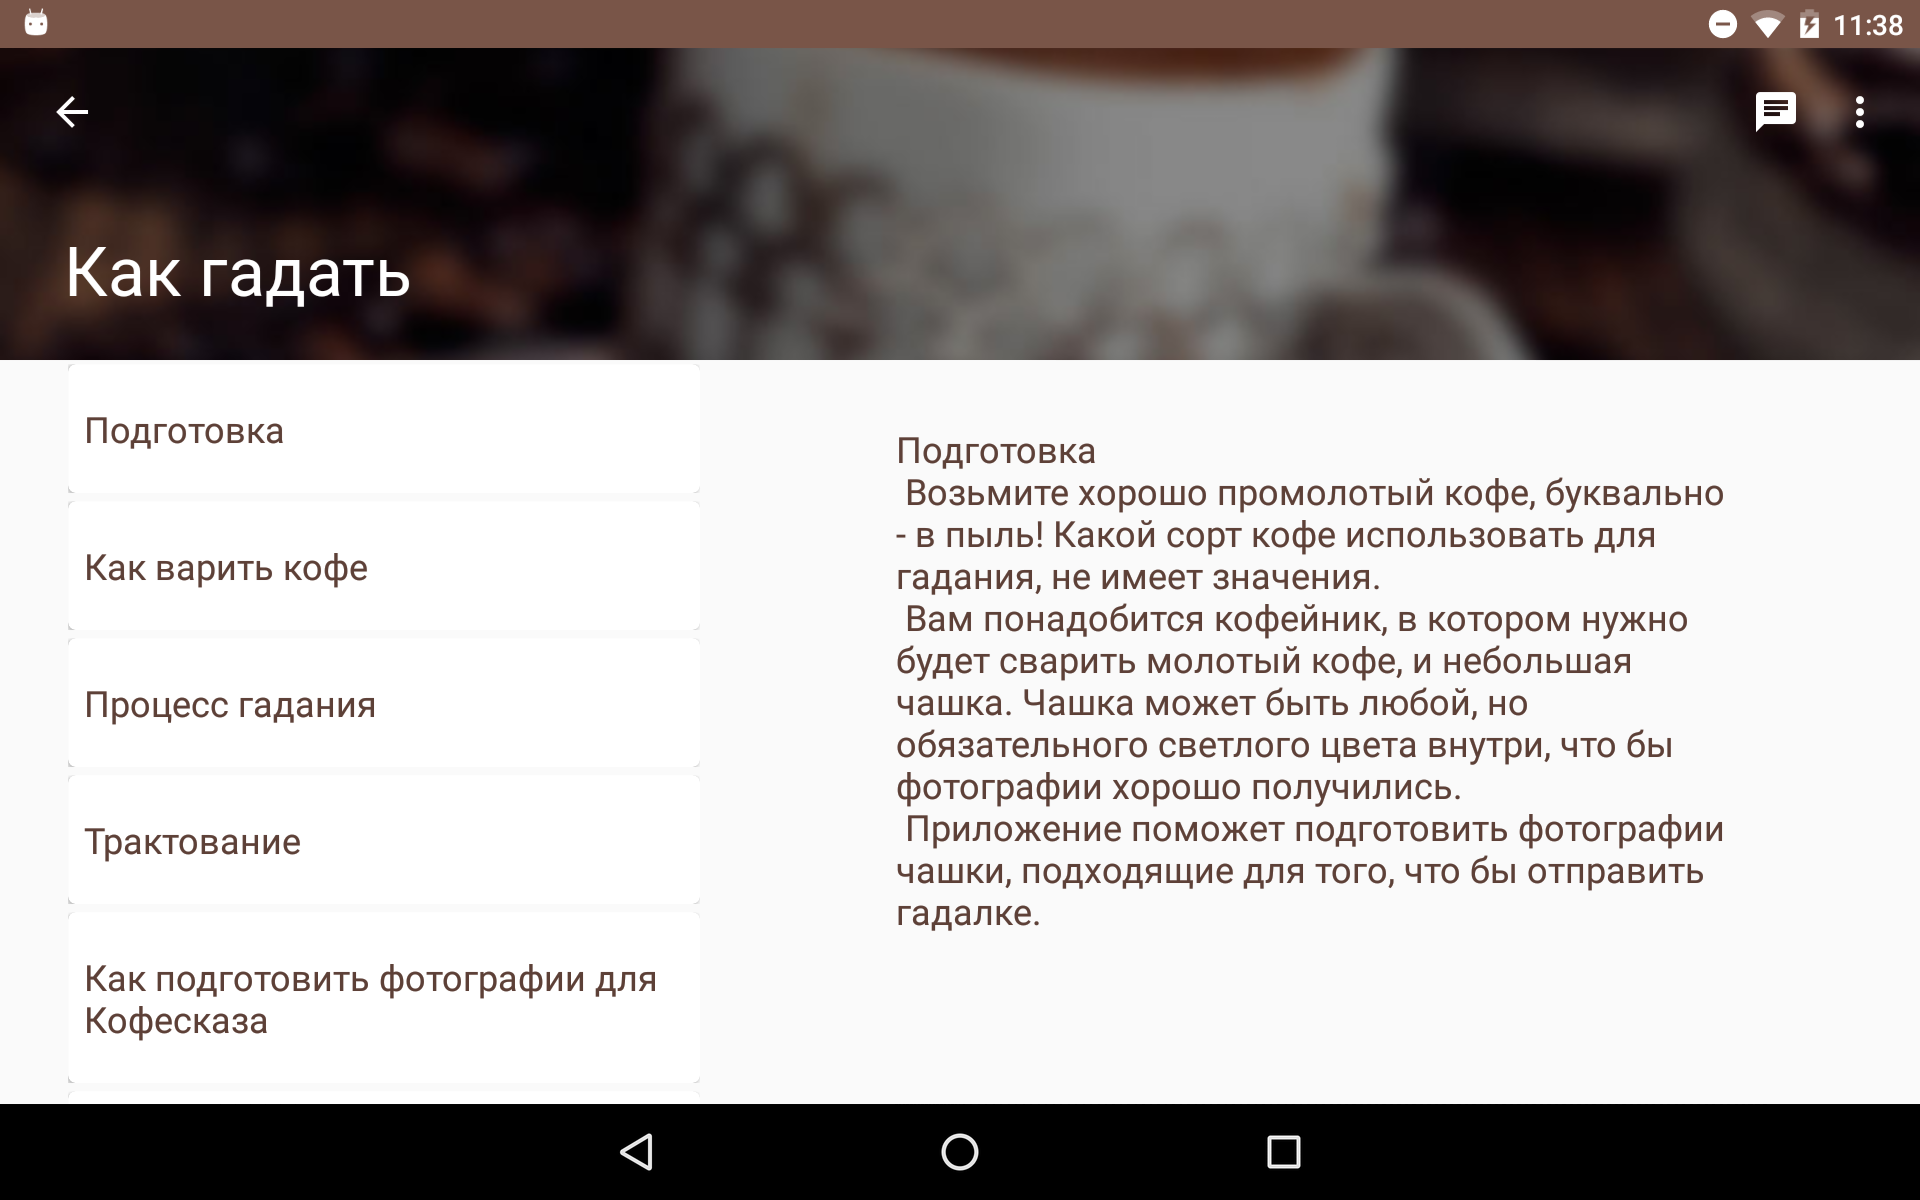 Справочник по гаданию на кофейной гуще и по использованию Android-приложения.